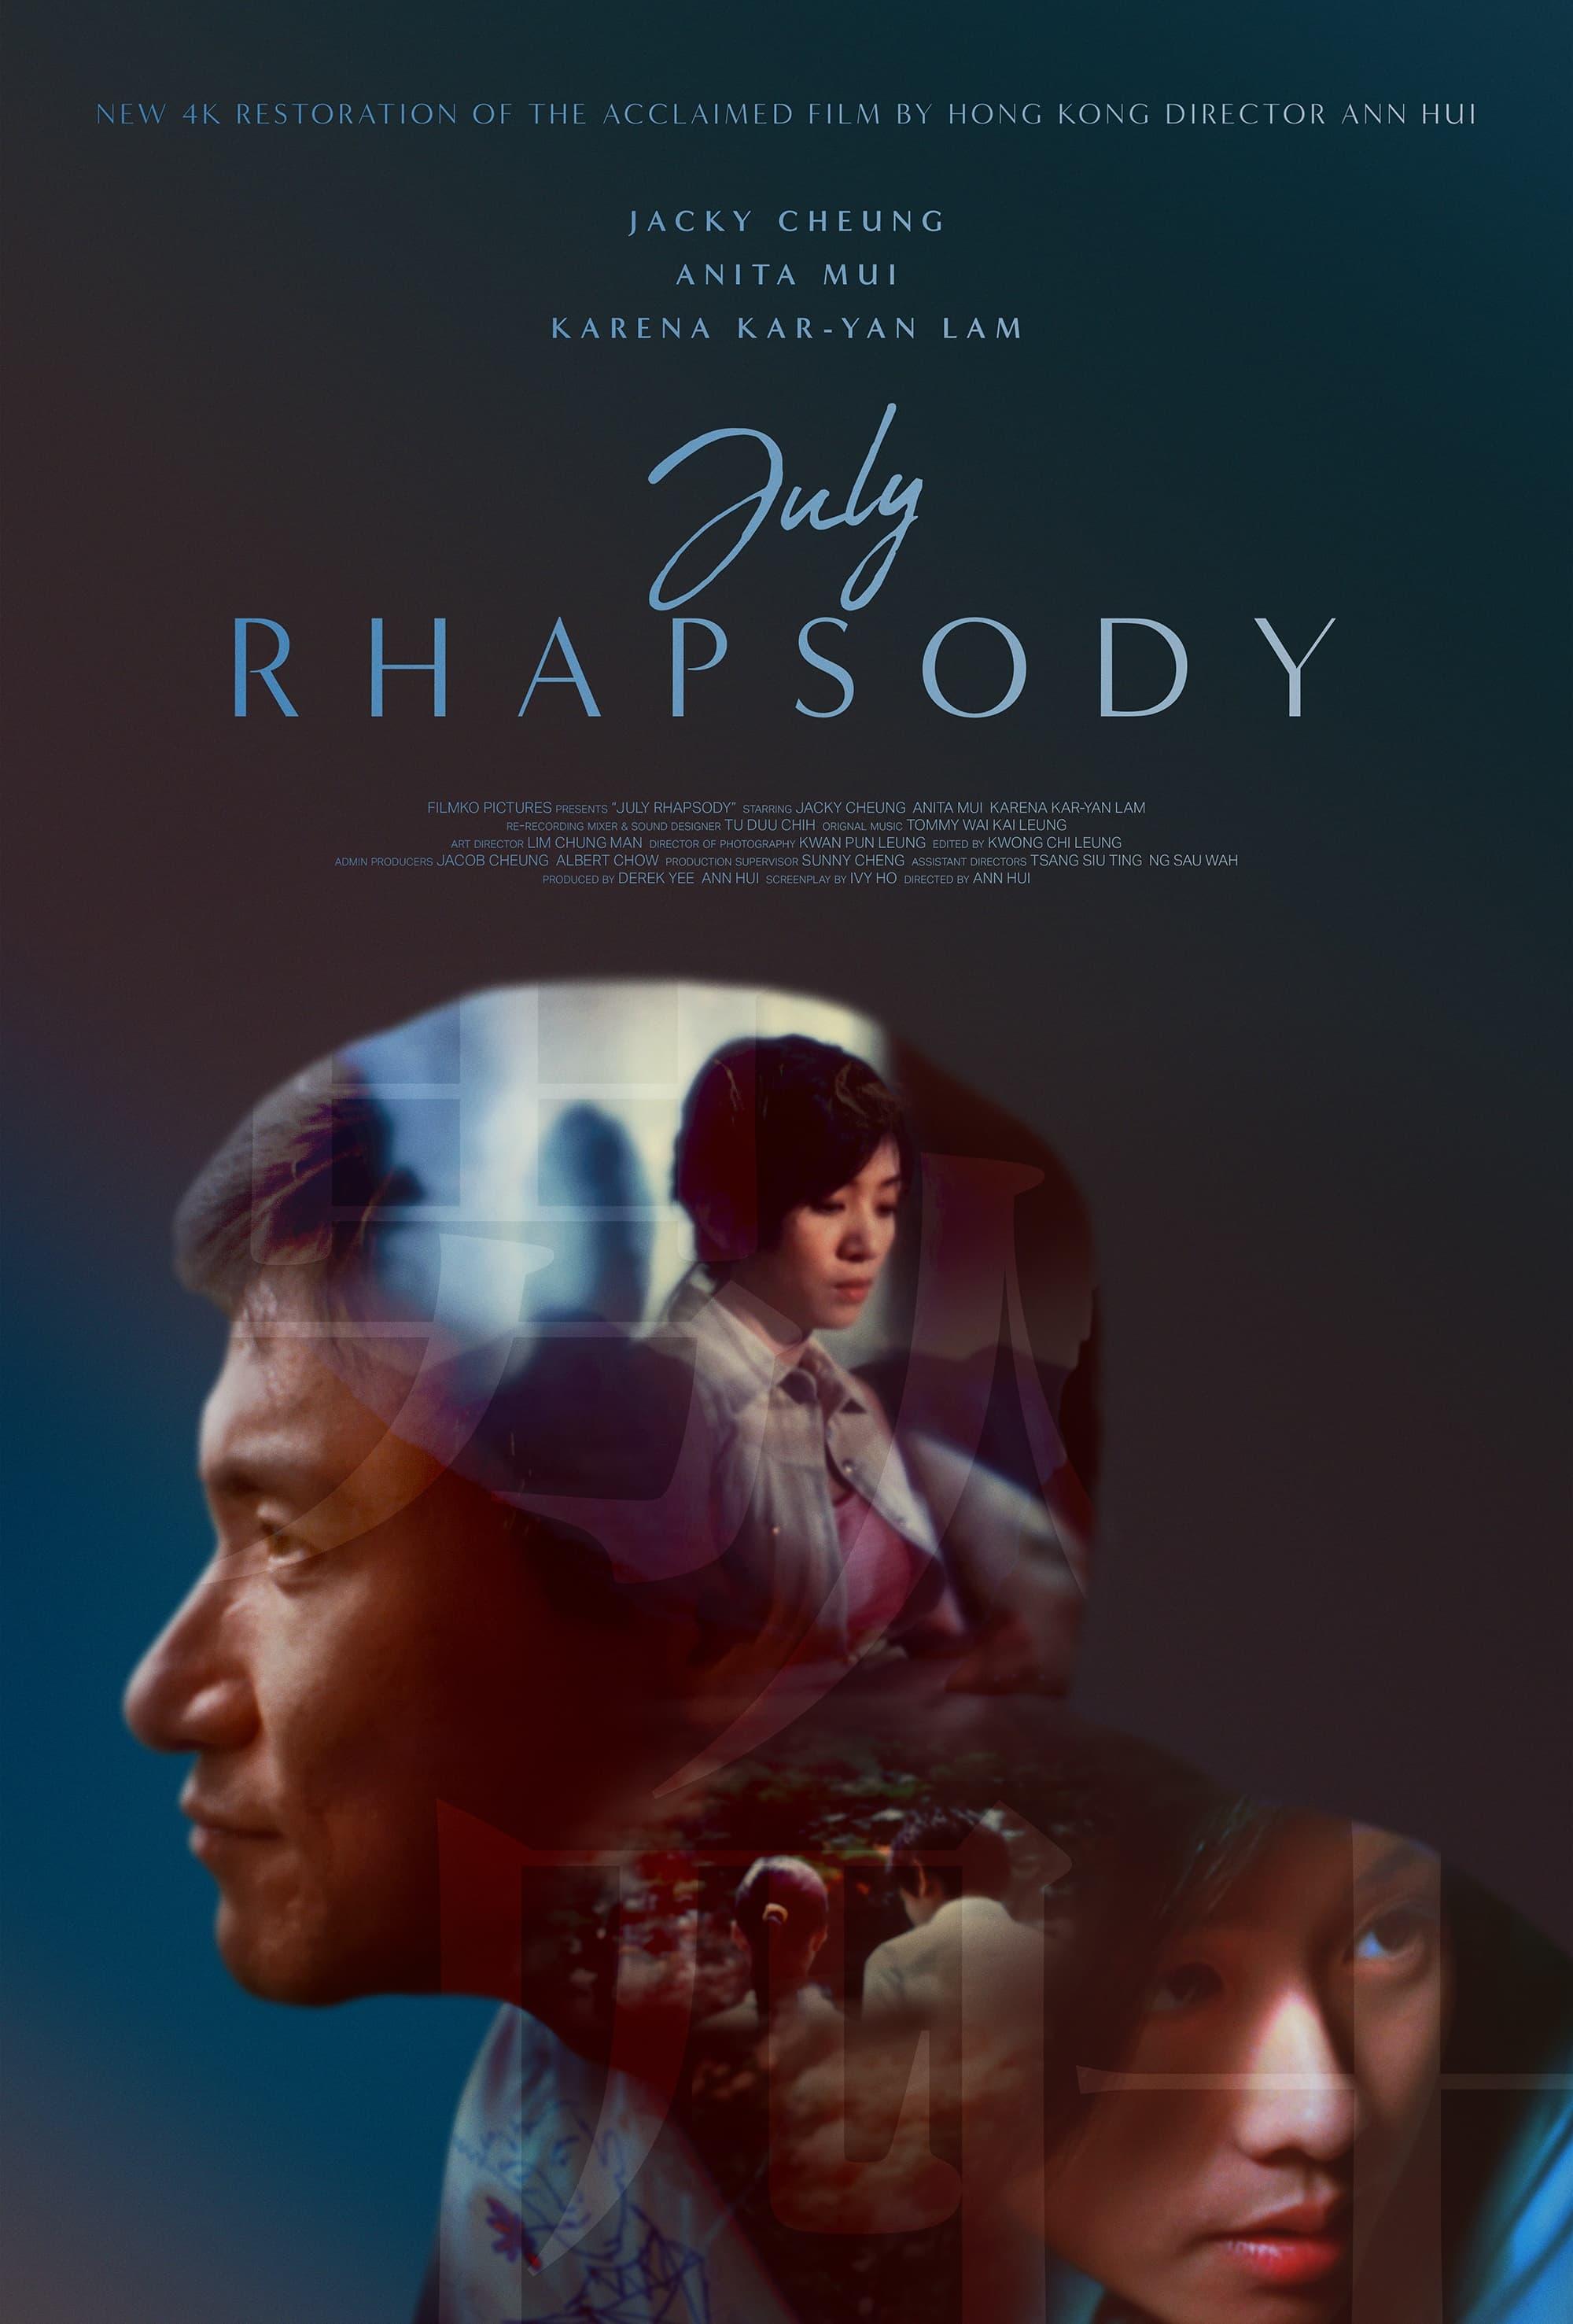 July Rhapsody poster